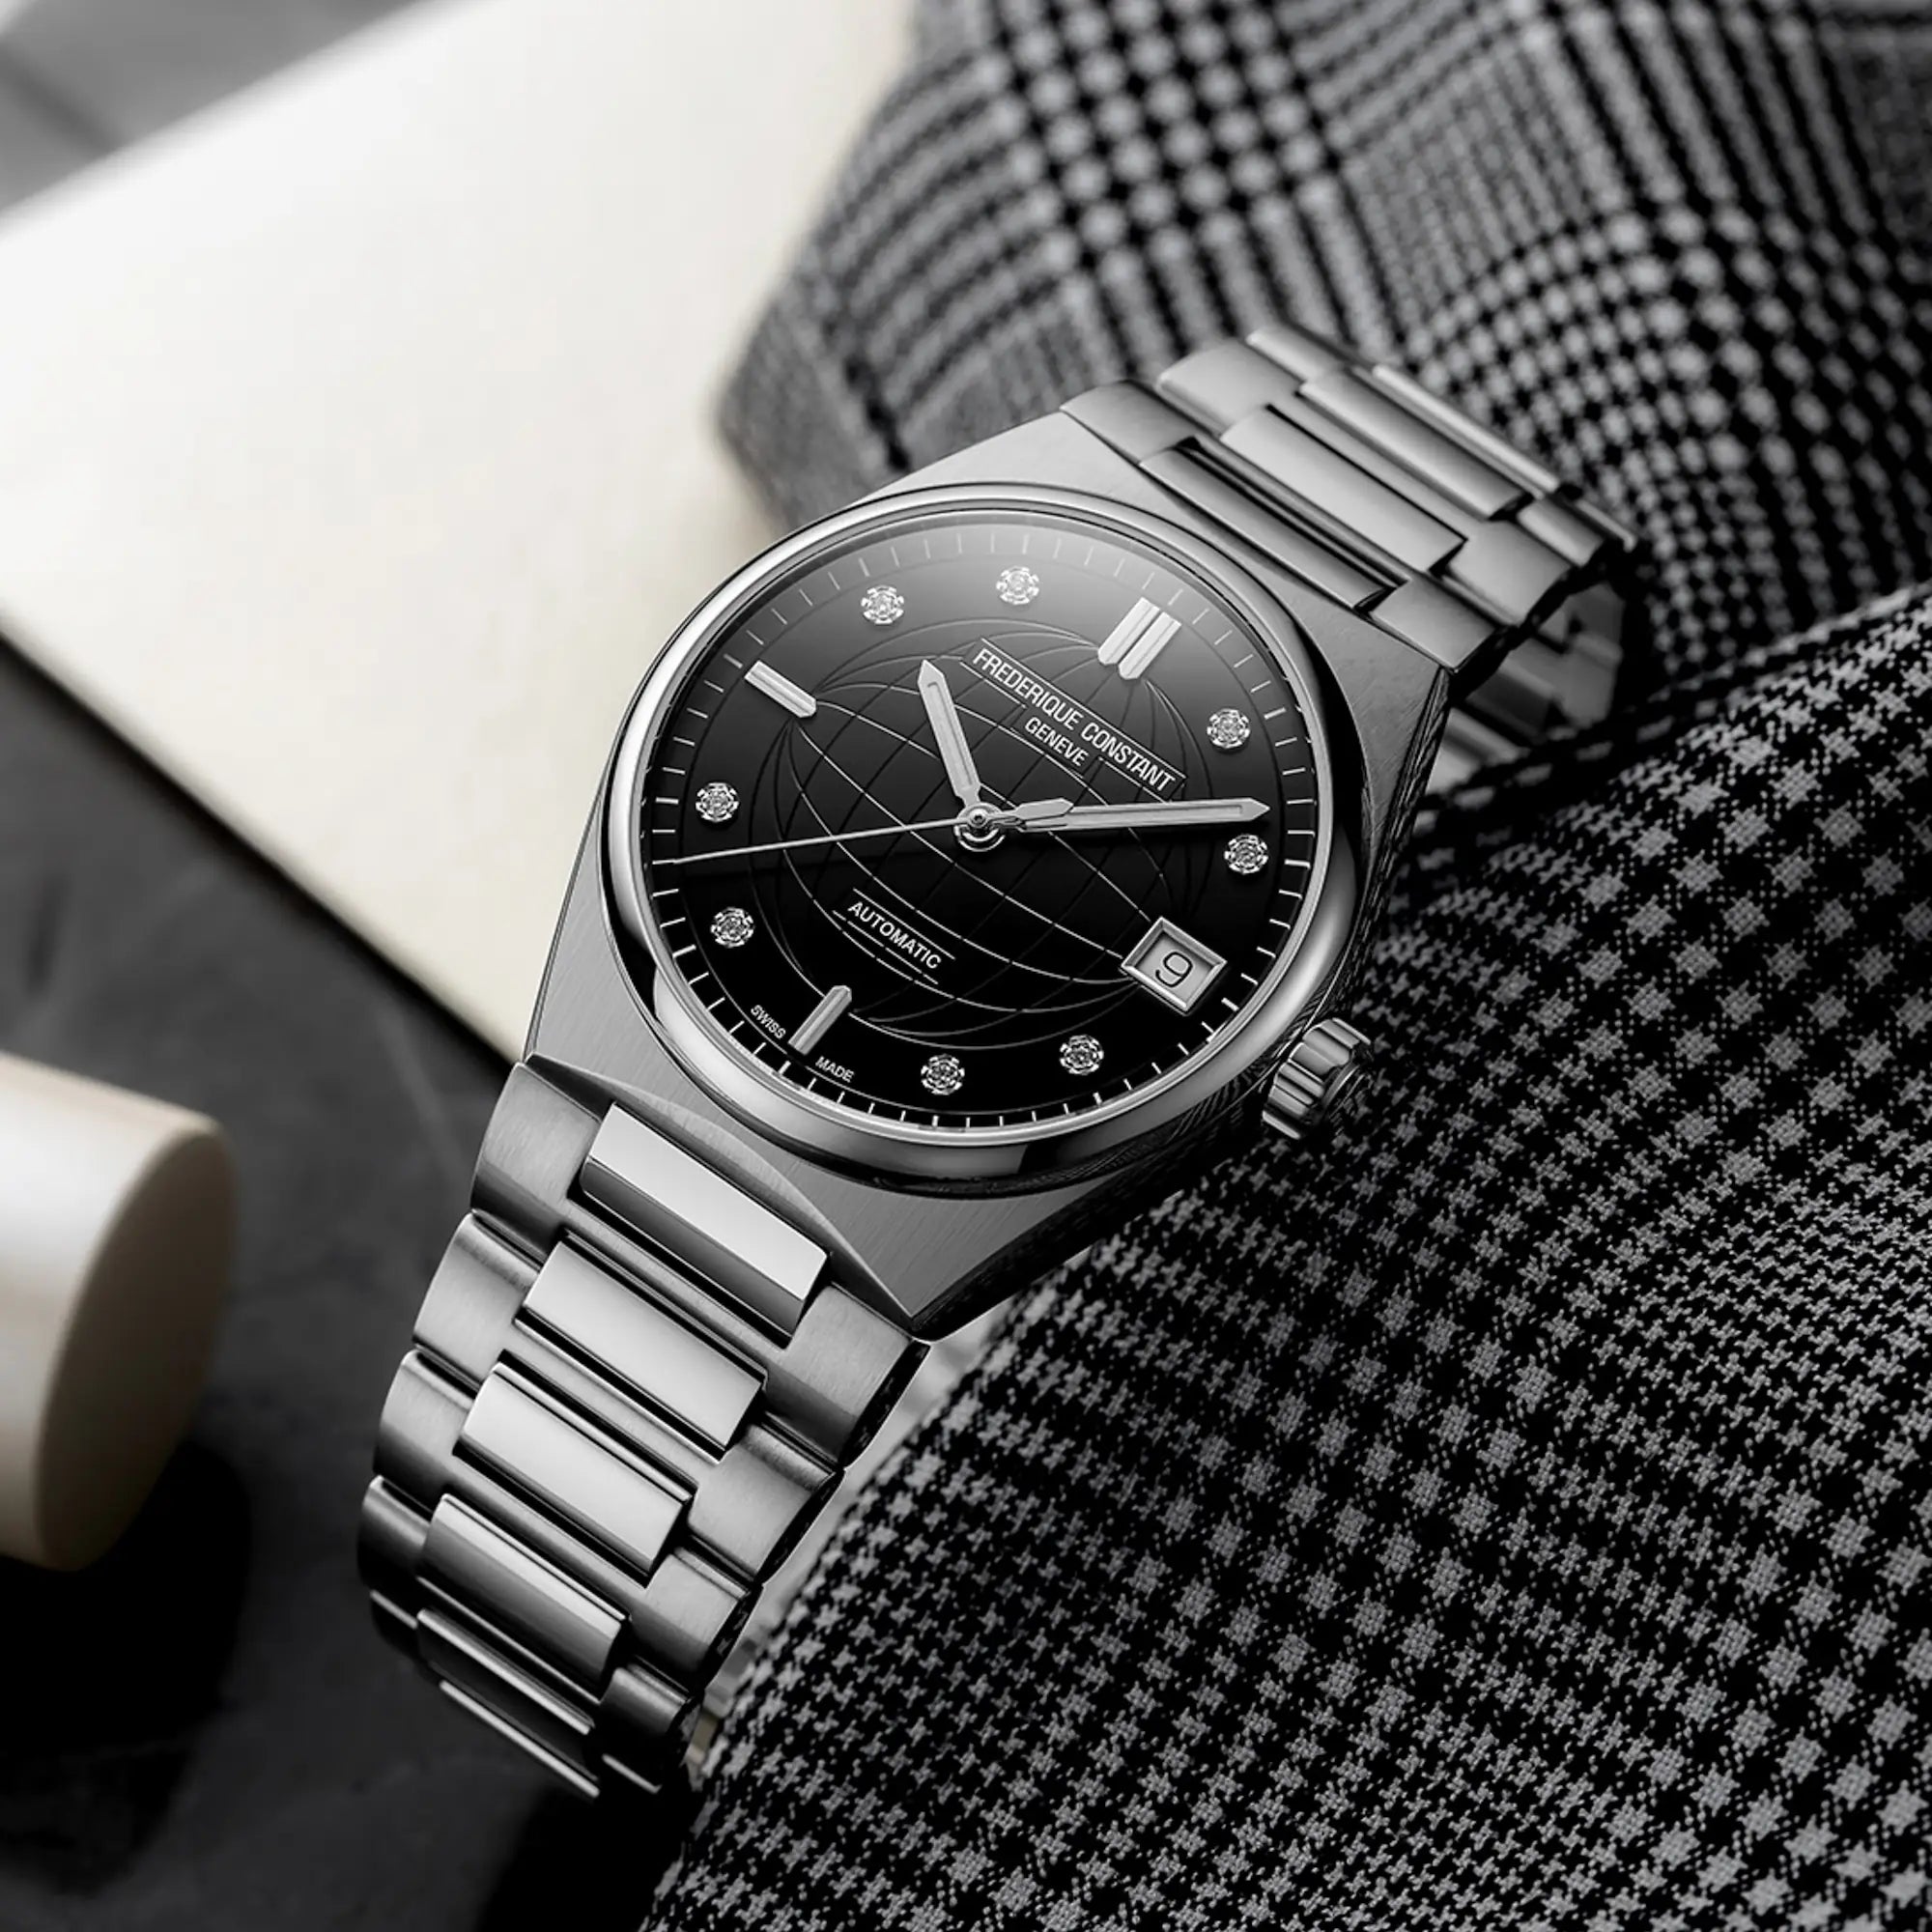 Produktfotografie der Frederique Constant Uhr "Highlife Ladies Automatic" mit einem schwarzen Zifferblatt mit Diamant-Indizes und Edelstahl-Gehäuse auf einem schwarz-weiß karierten Stofftuch 